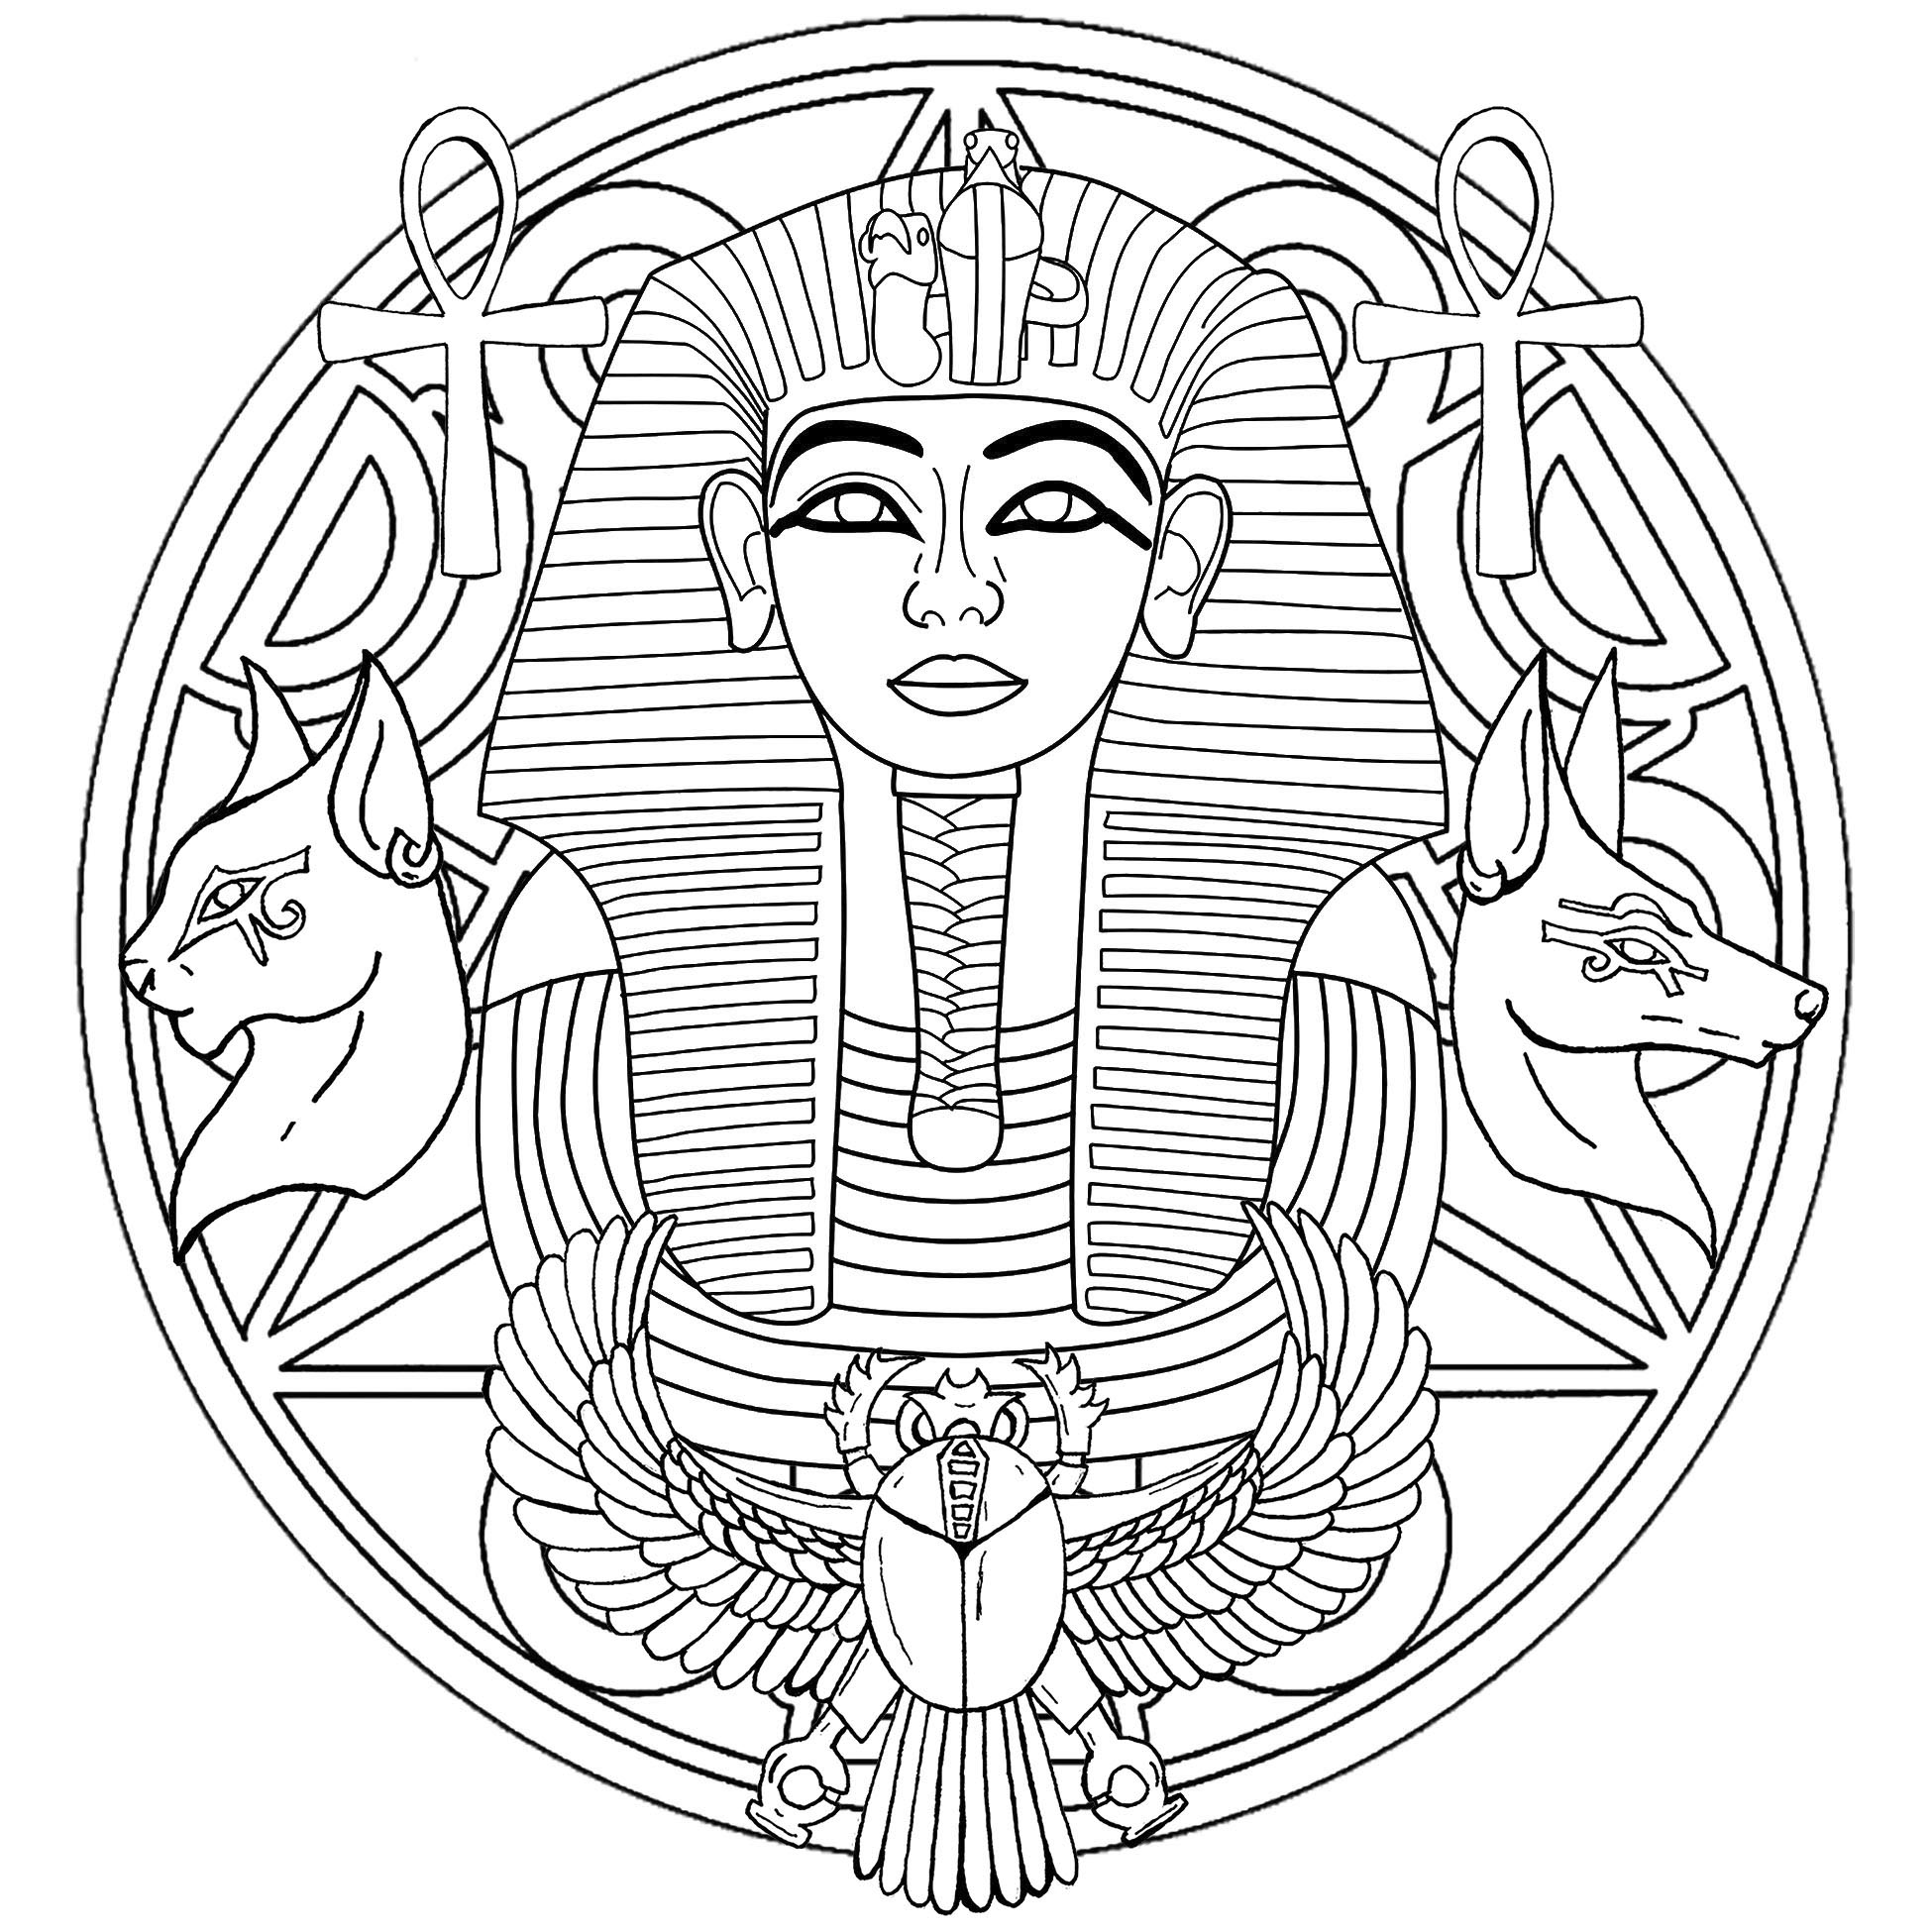 Tutanchamun ist der elfte Pharao der XVIIIᵉ Dynastie. Dies ist ein Mandala mit seiner berühmten Totenmaske in der Mitte. Version 2